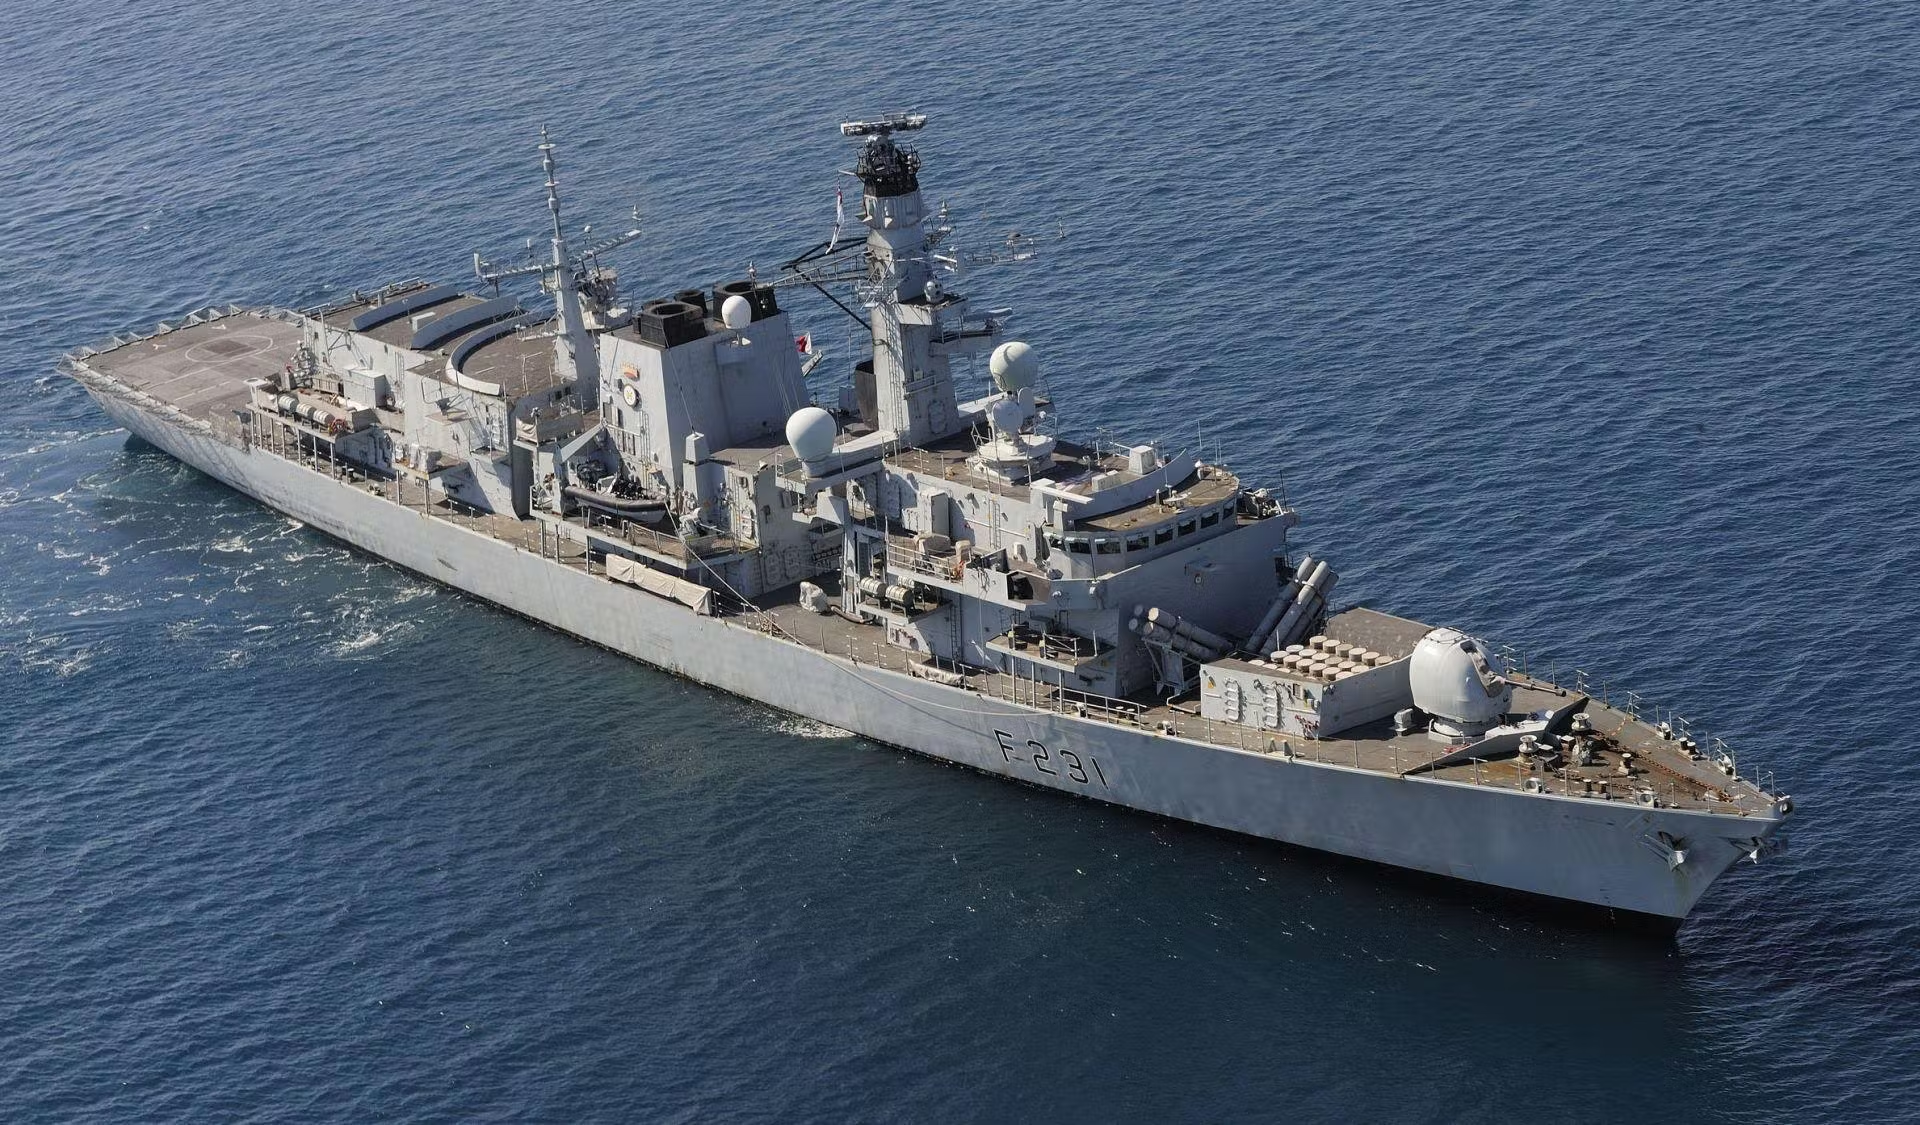 Βρετανία: Ξεκίνησε την αντικατάσταση των βλημάτων κατά πλοίων RGM-84 Harpoon με NSM στις φρεγάτες Type-23